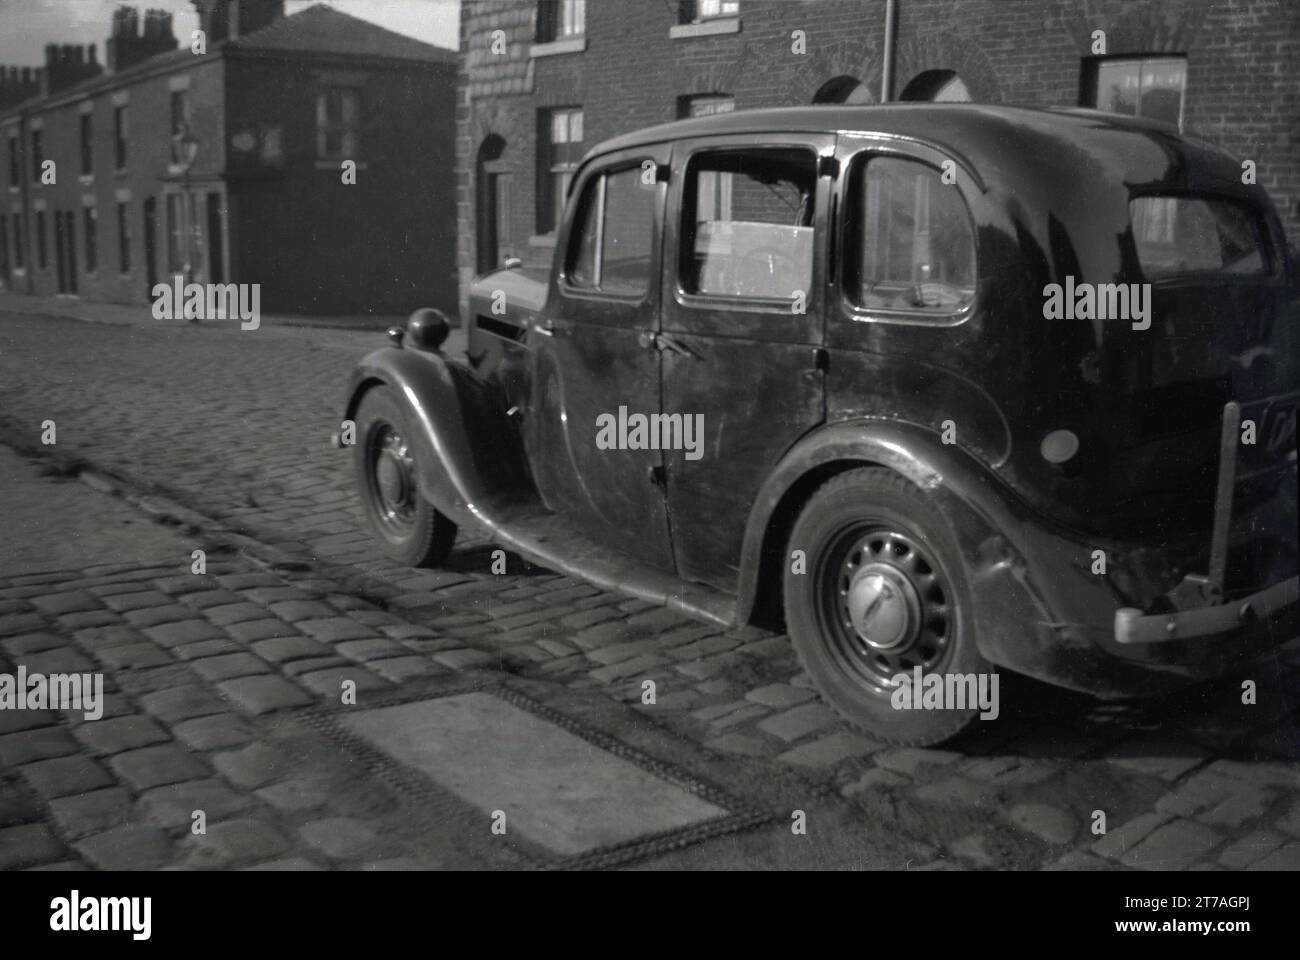 Anni '1950, storica, un'automobile di un decennio precedente, probabilmente degli anni '1940, parcheggiata su una strada acciottolata di piccole case vittoriane terrazzate, Oldham, Manchester, Inghilterra, Regno Unito. Foto Stock